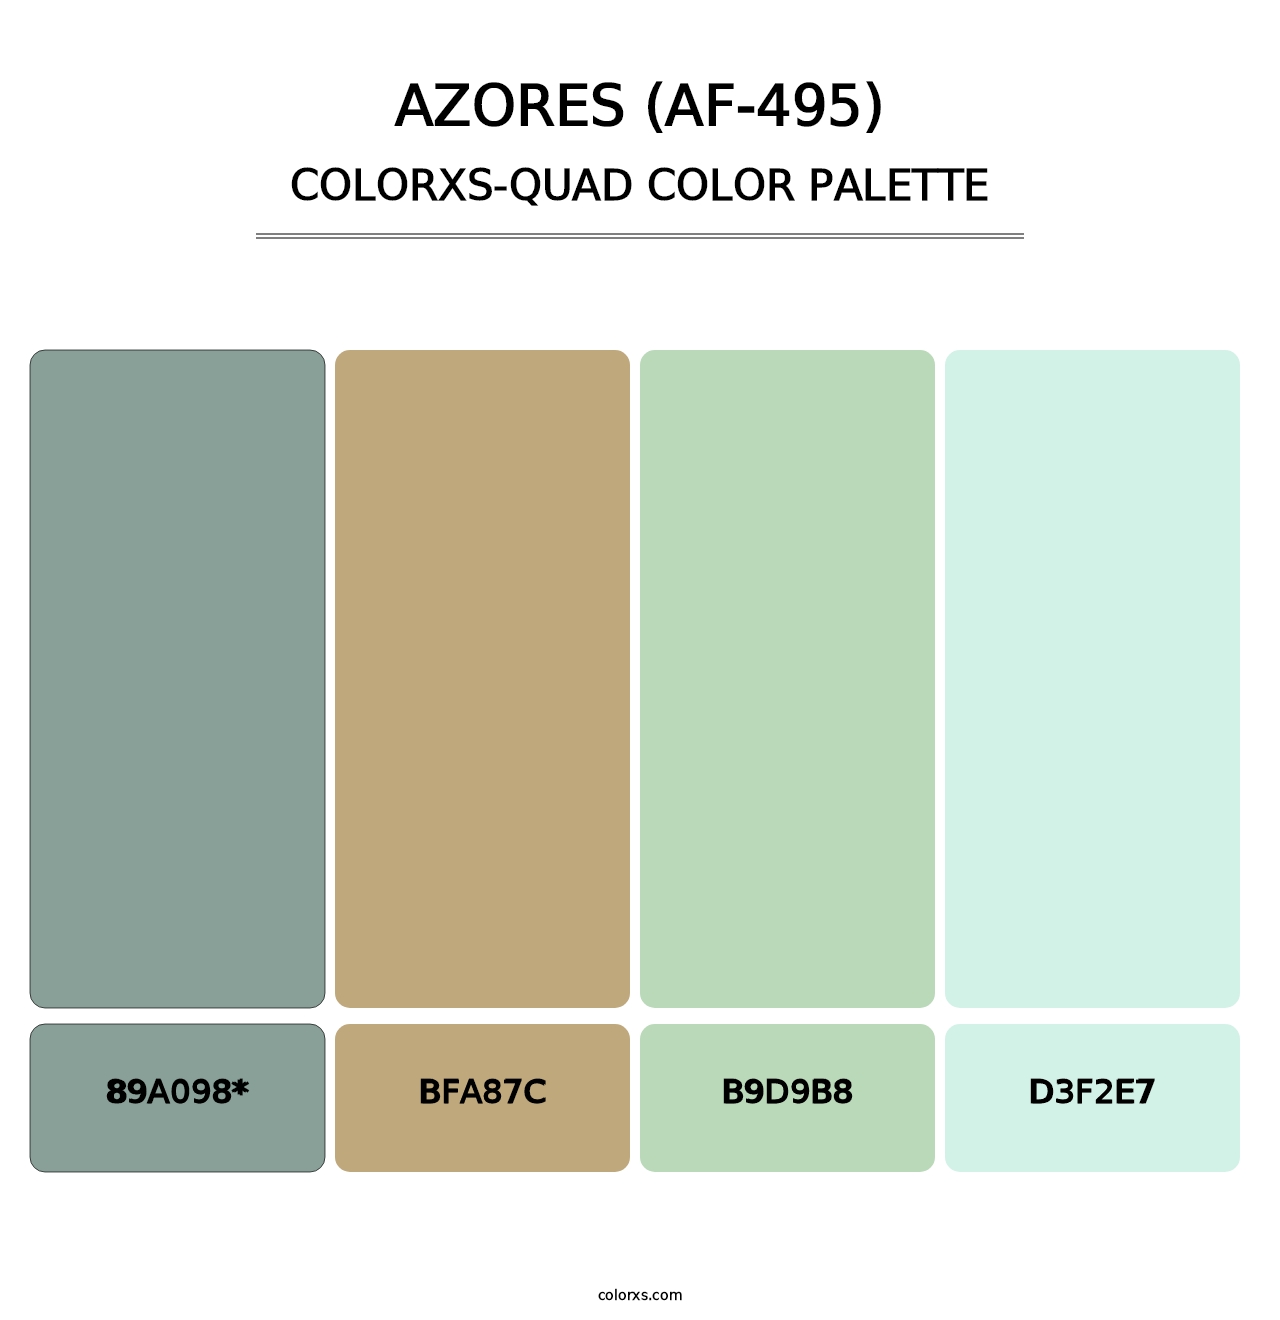 Azores (AF-495) - Colorxs Quad Palette